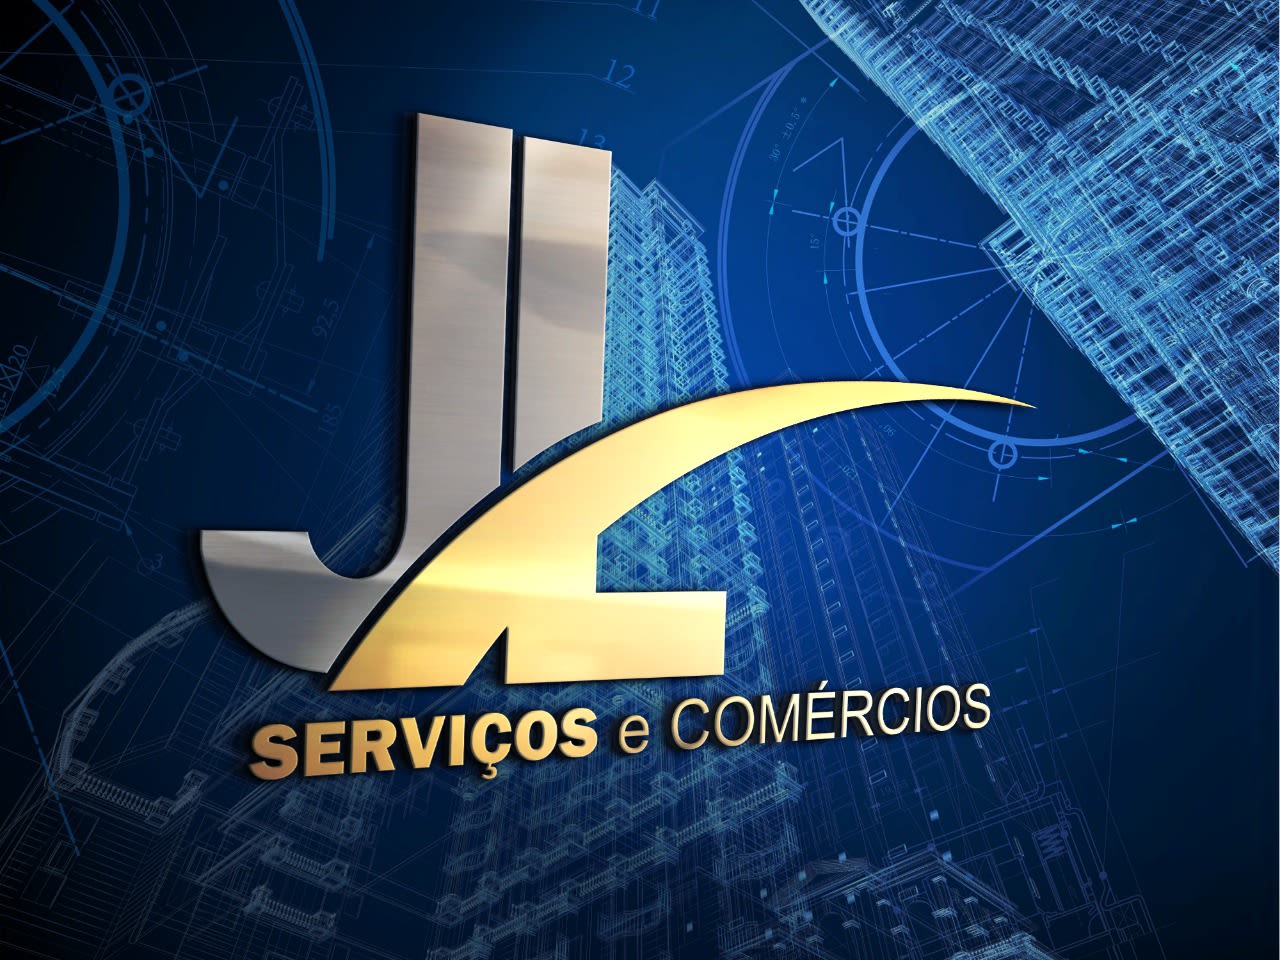 JL Serviços e Comércio